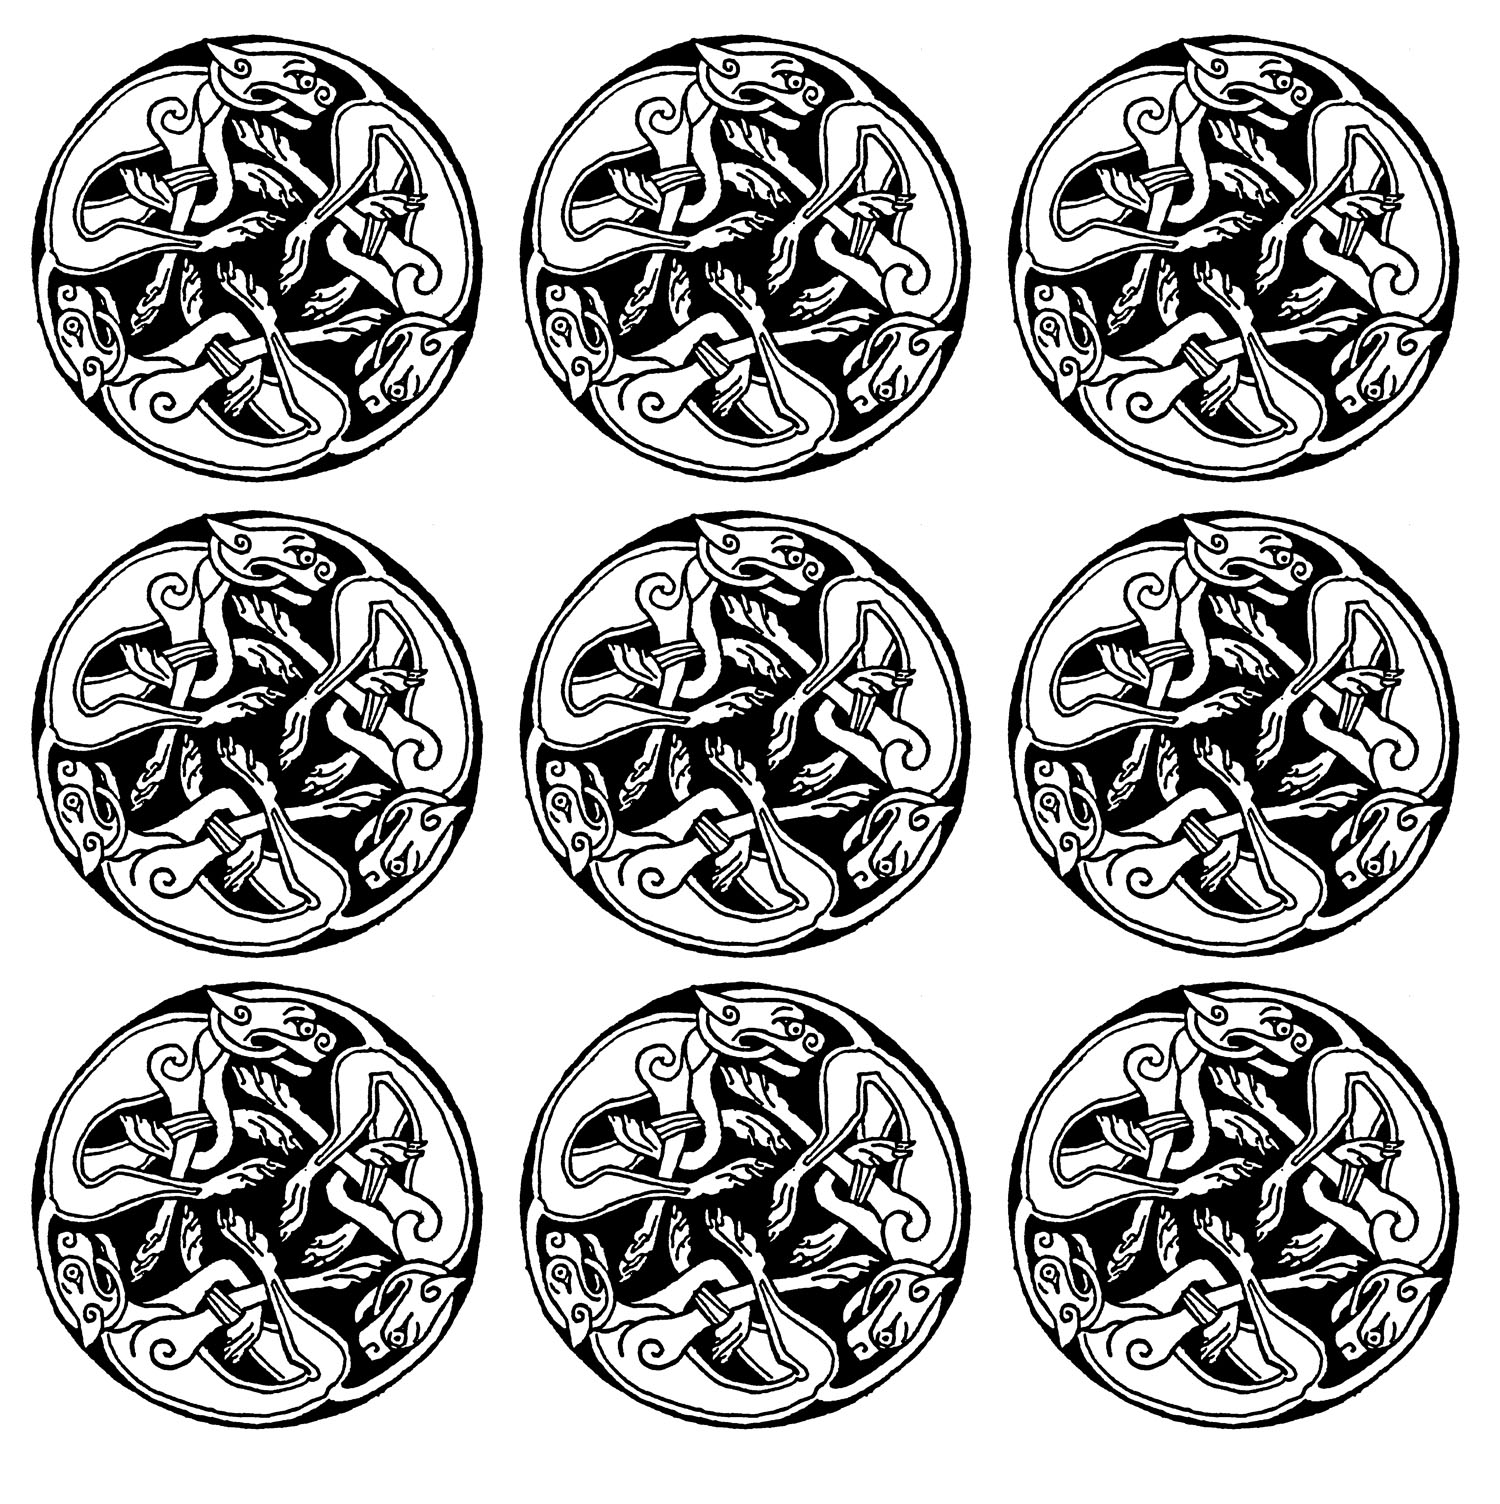 9 motifs répétés représentant des gargouilles... Une sorte de Mandala du Moyen âge assez intriguant